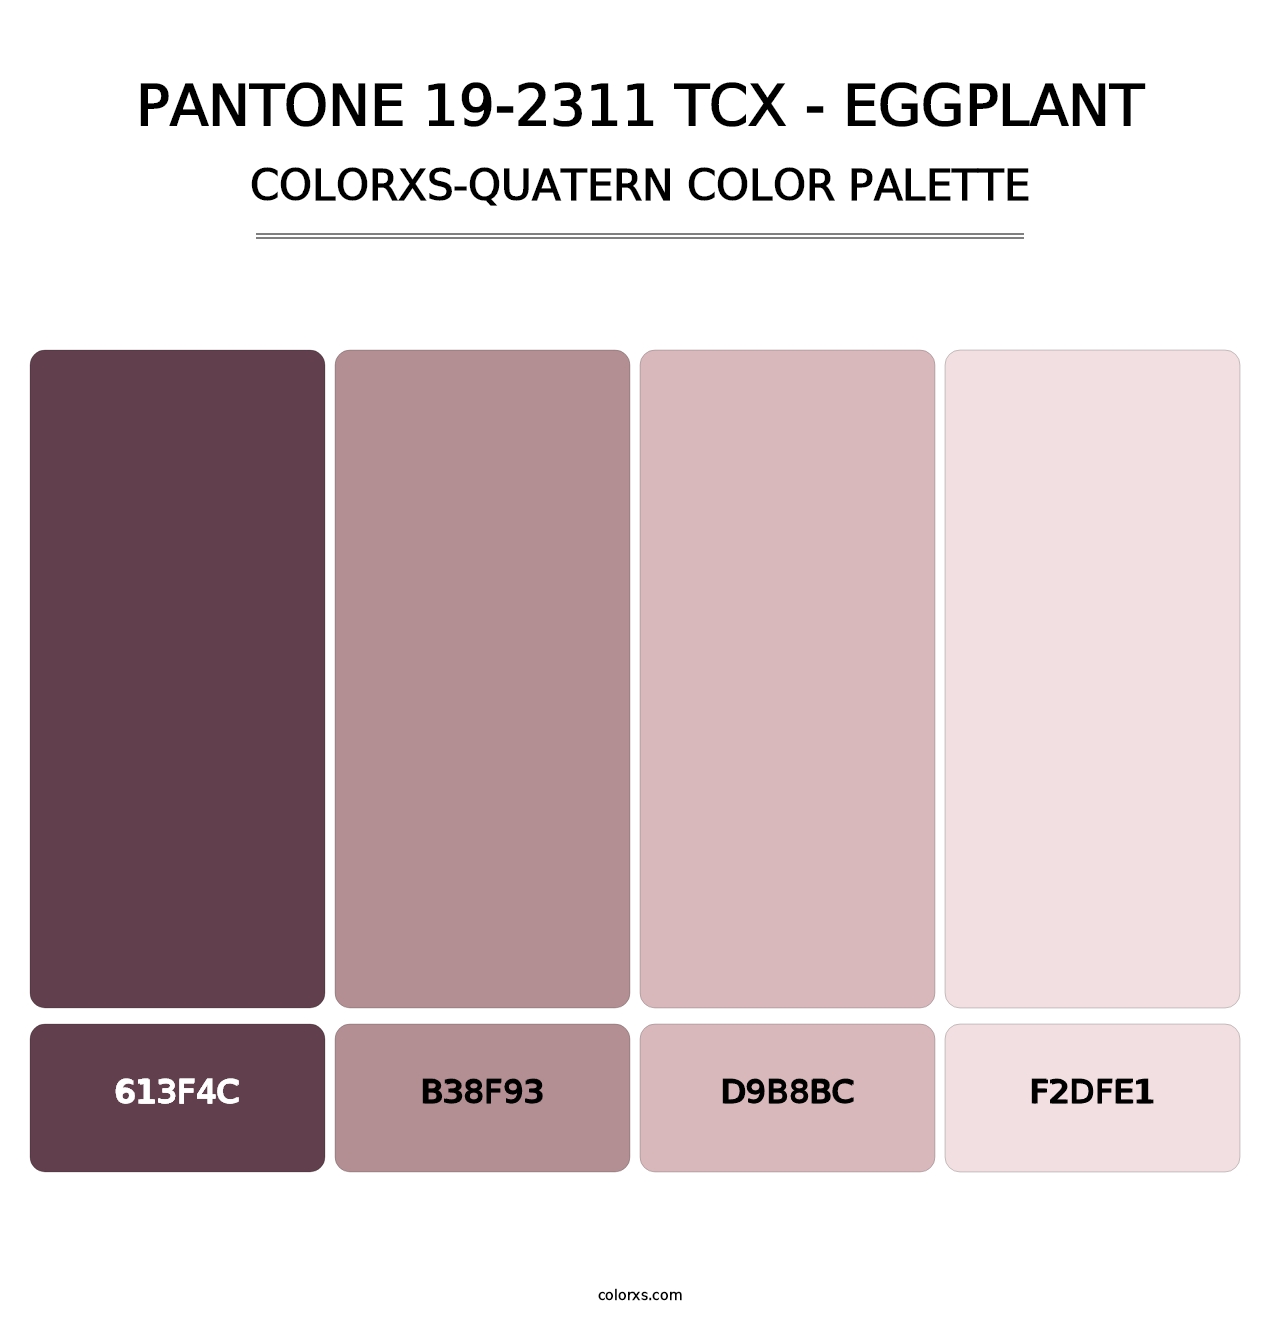 PANTONE 19-2311 TCX - Eggplant - Colorxs Quatern Palette